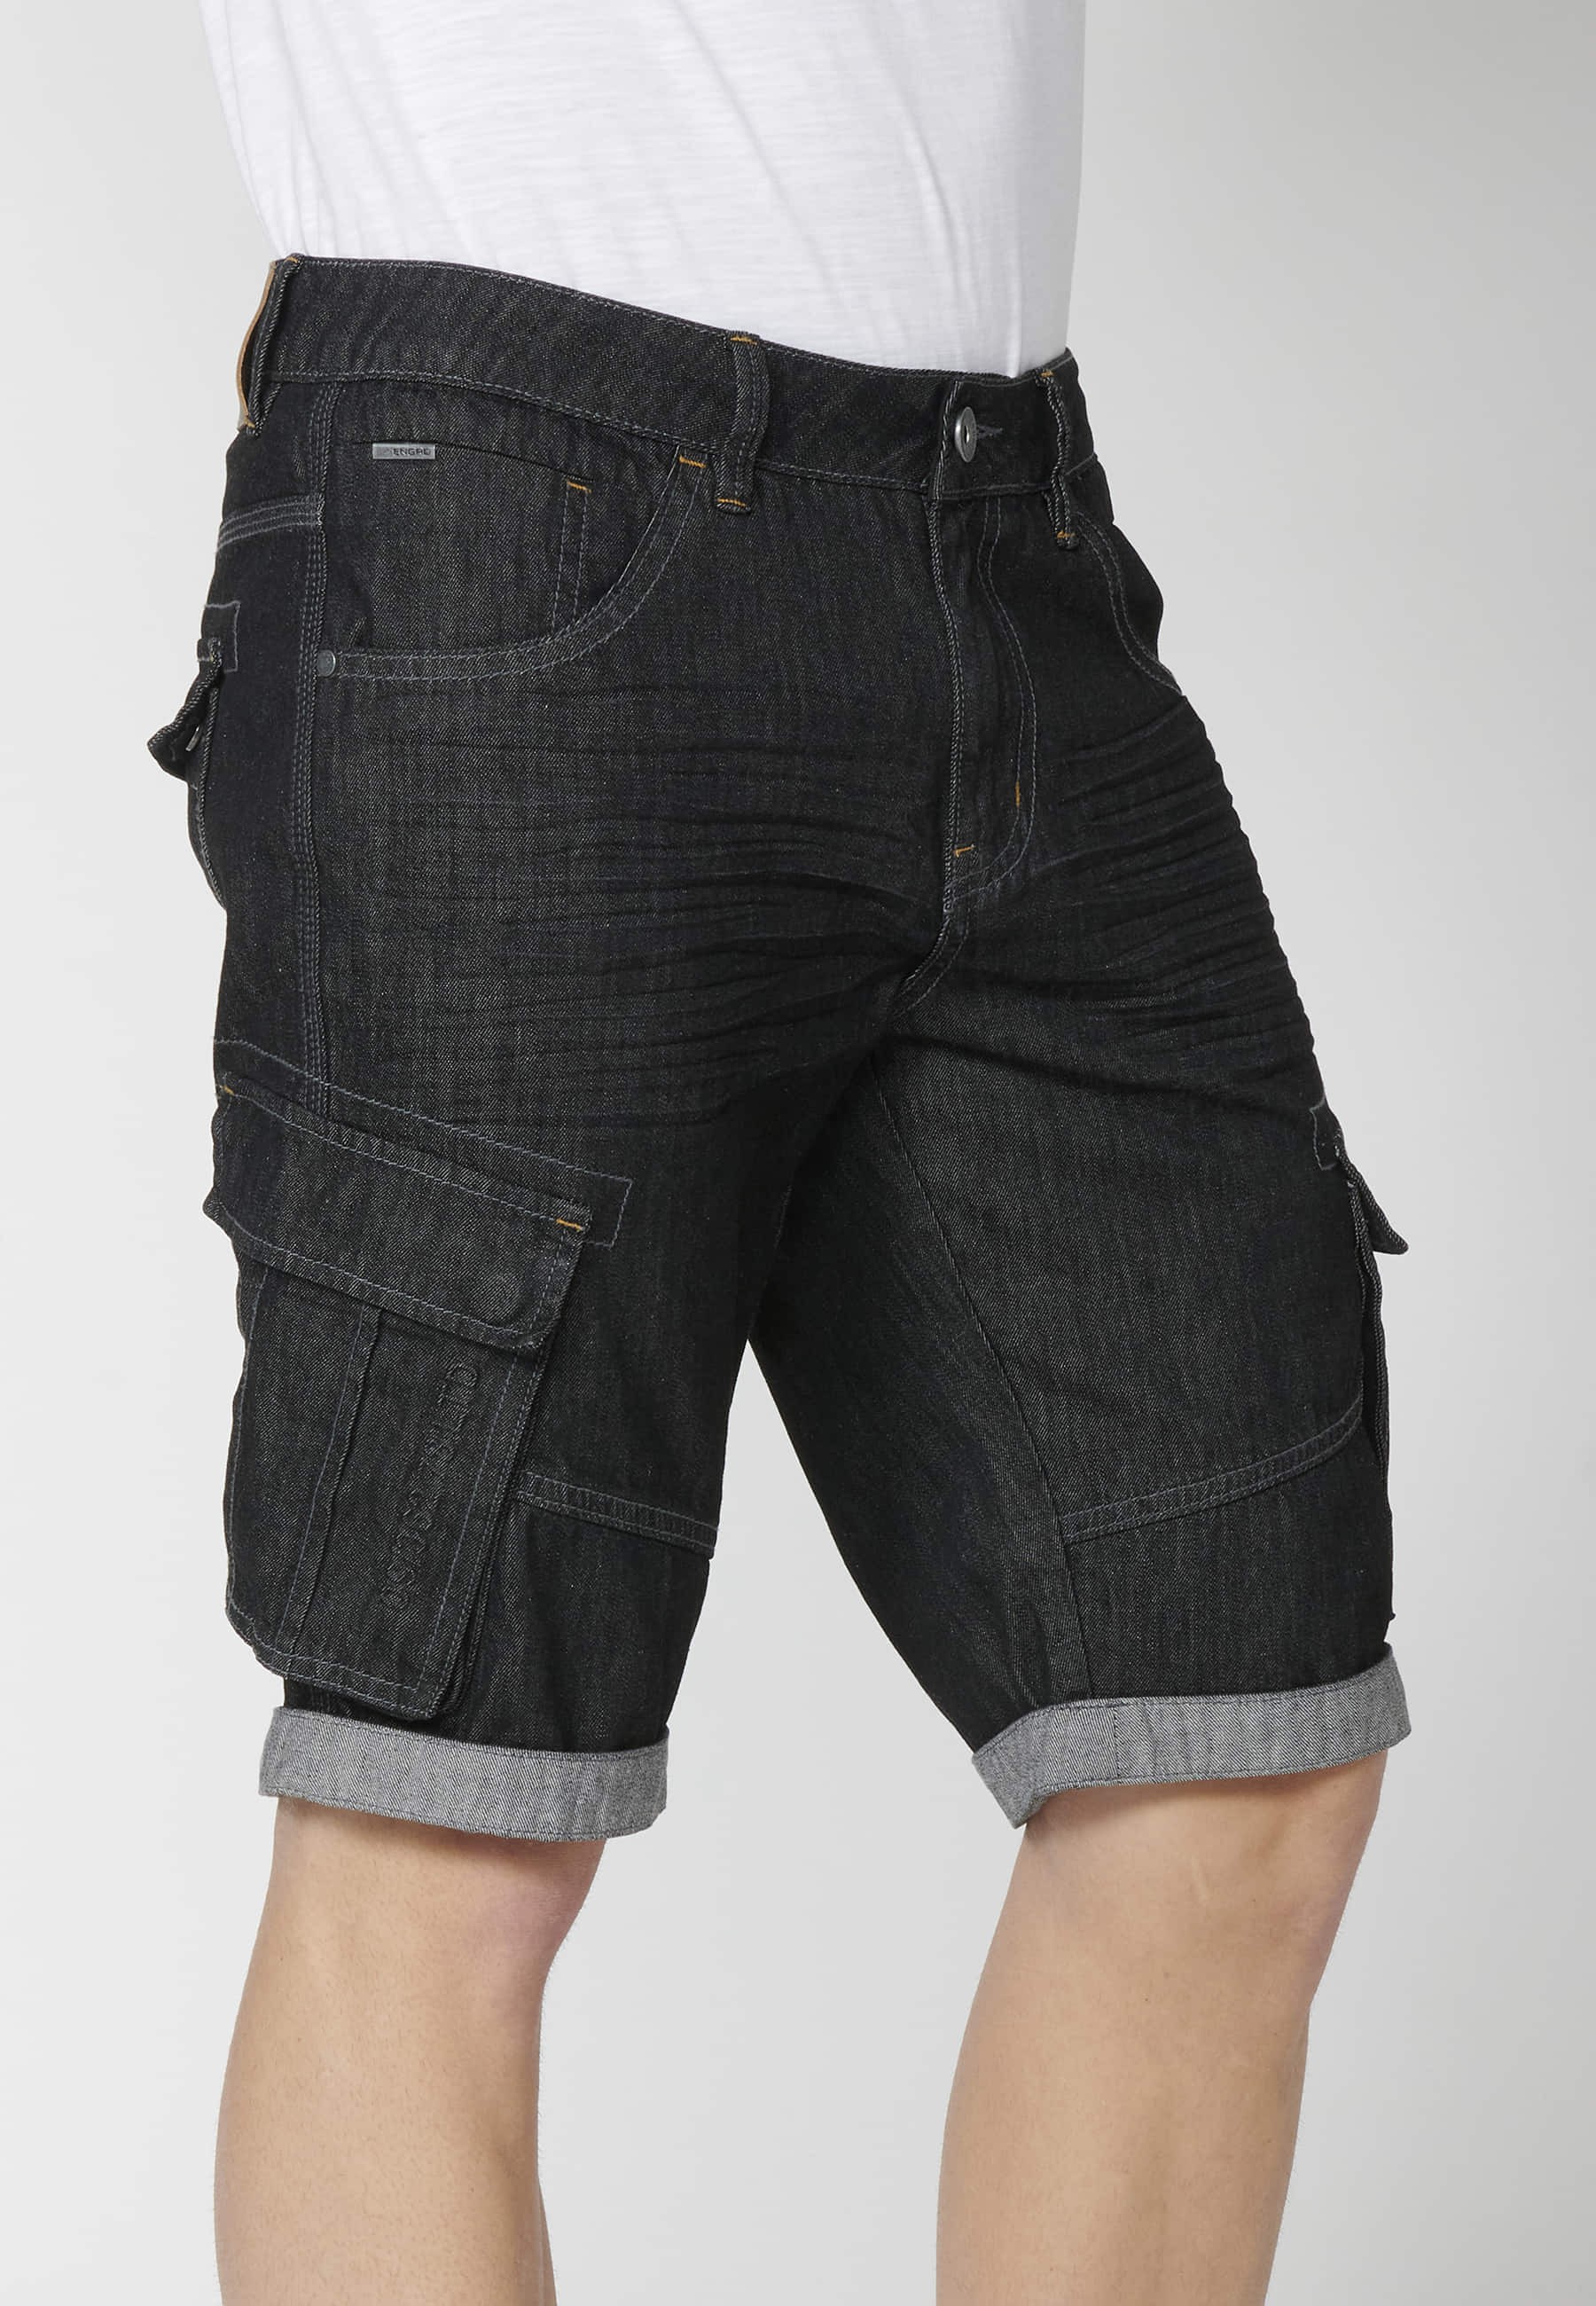 Pantalón corto Bermuda Vaquera Denim Stretch Regular Fit con cuatro bolsillos color Negro para Hombre 3